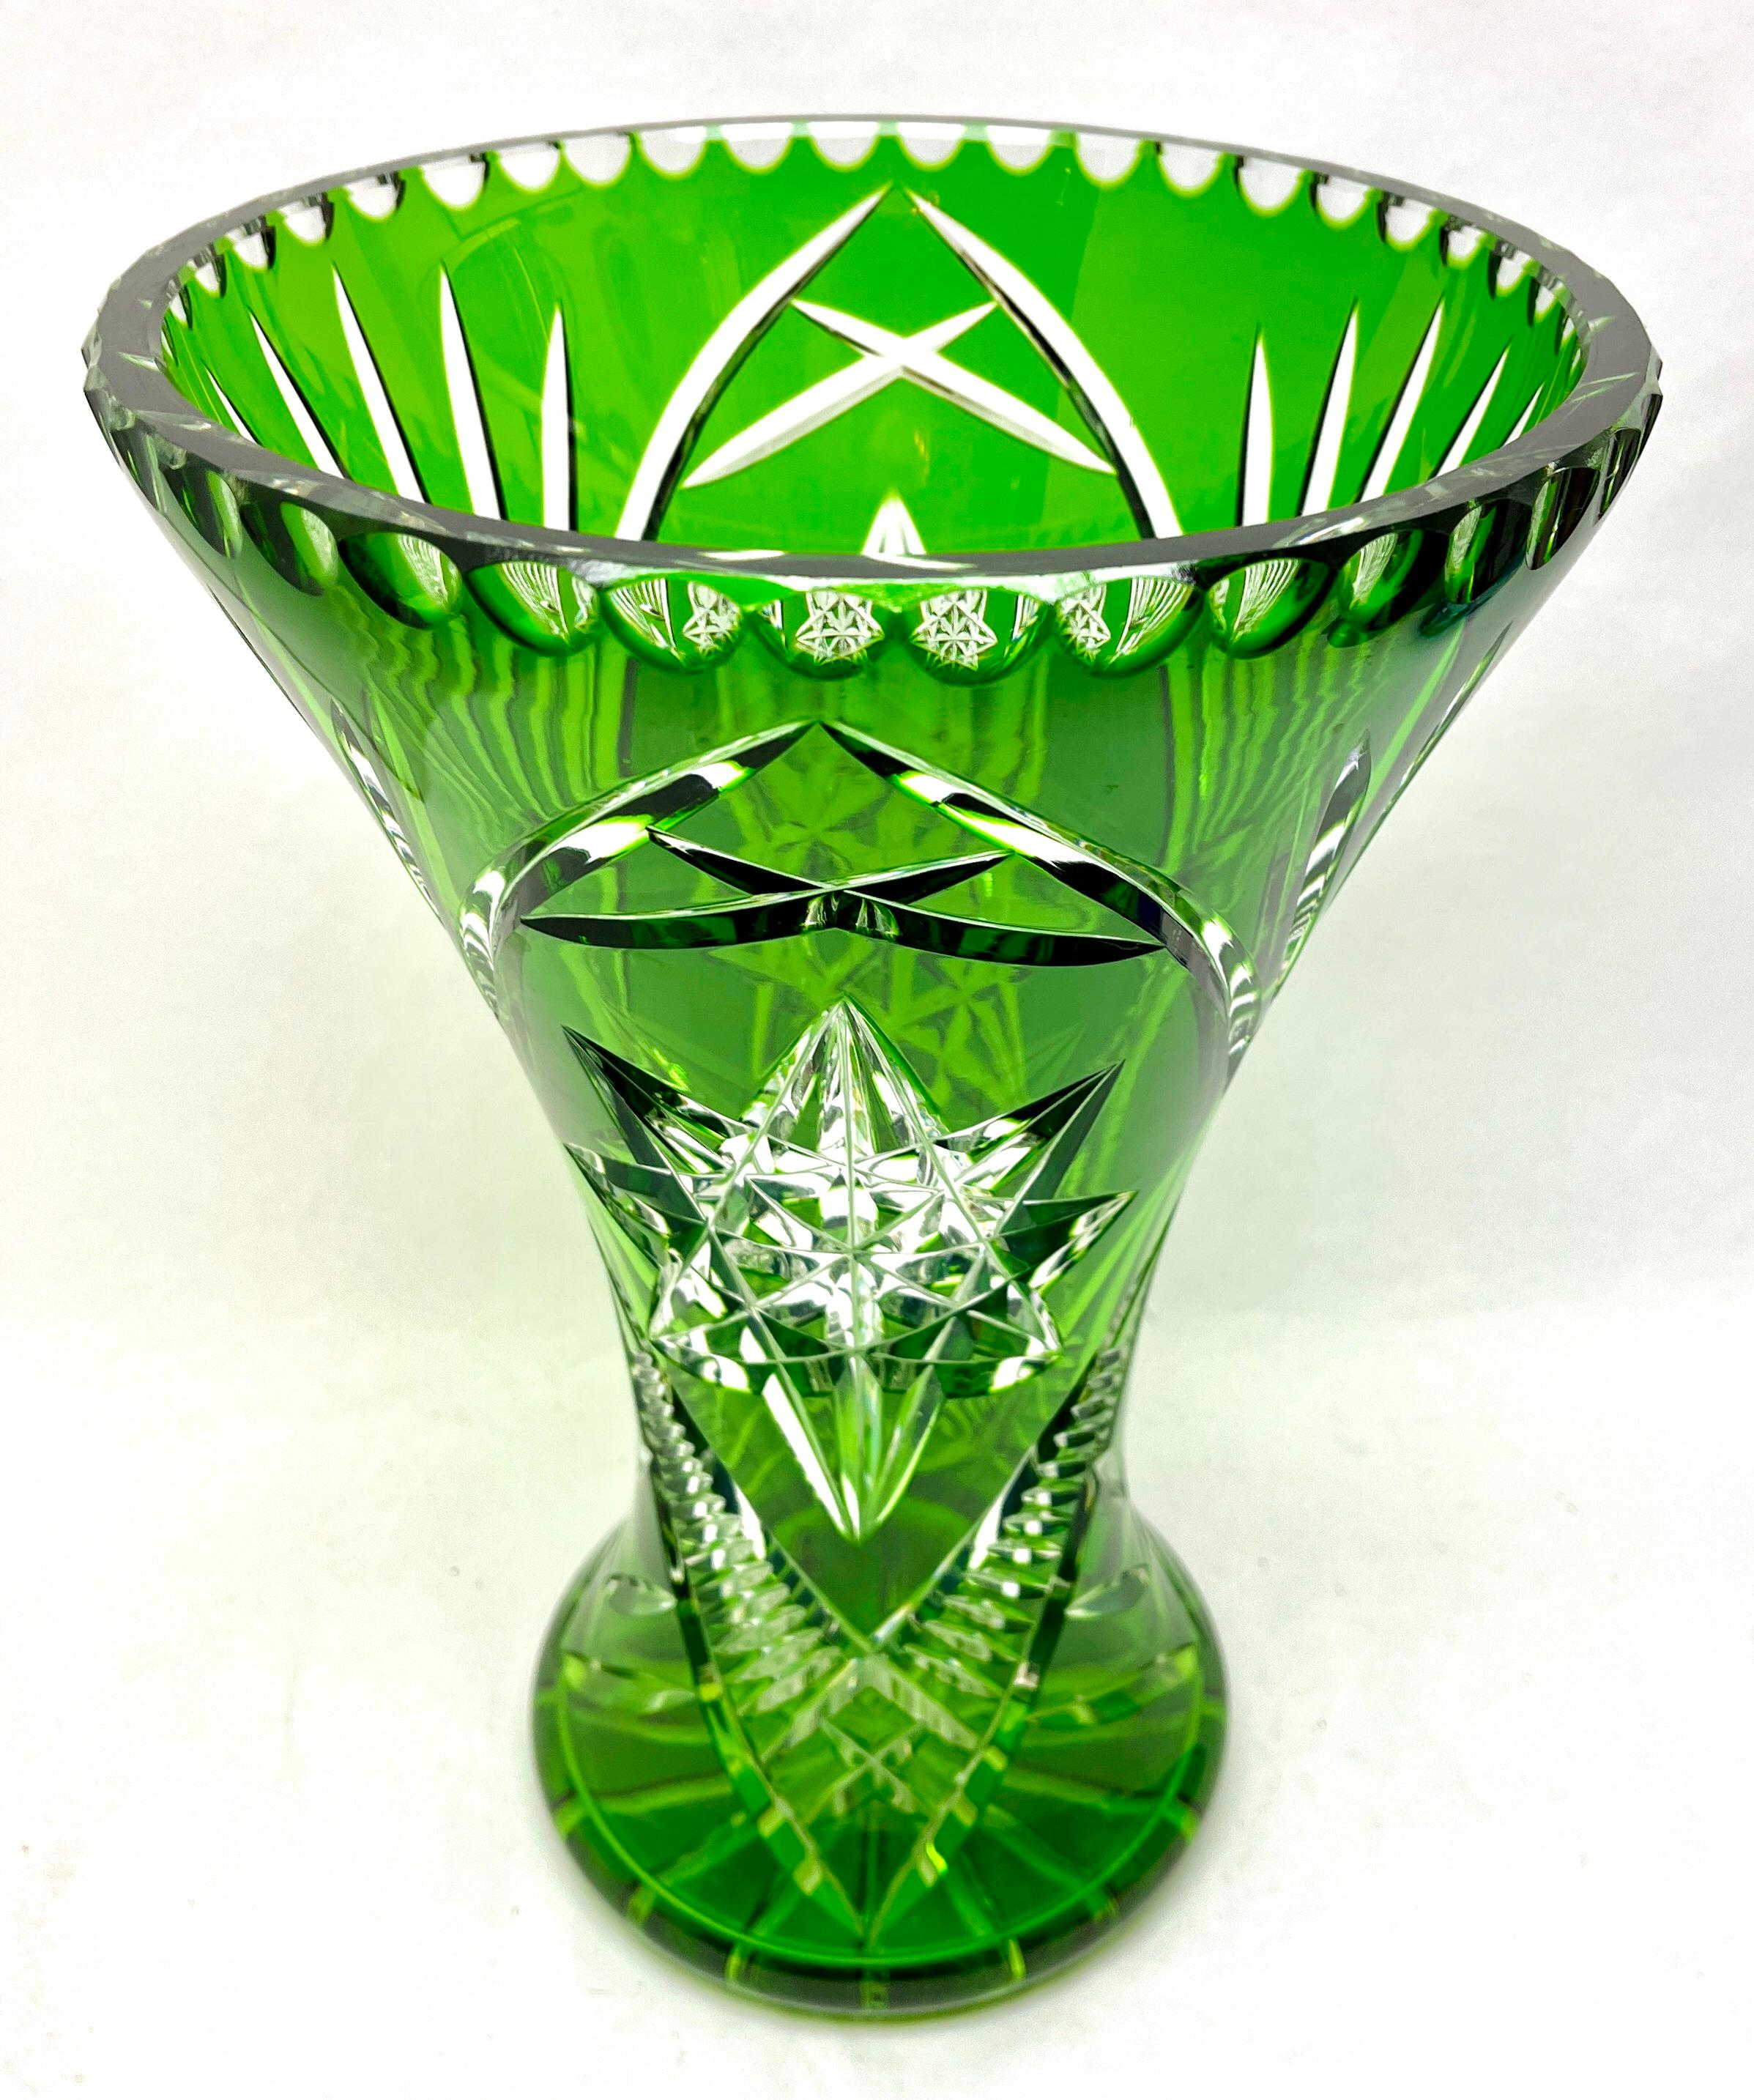 Lebendige, wiesengrüne Vase aus gehärtetem Kristallglas im böhmischen Stil mit geschliffenem Dekor aus Palmen und Sternen. Der Körper enthält eine gute Menge an Wasser, um das Arrangement stabil und blühend zu halten.

Gewicht Kristall 4,2 kg /